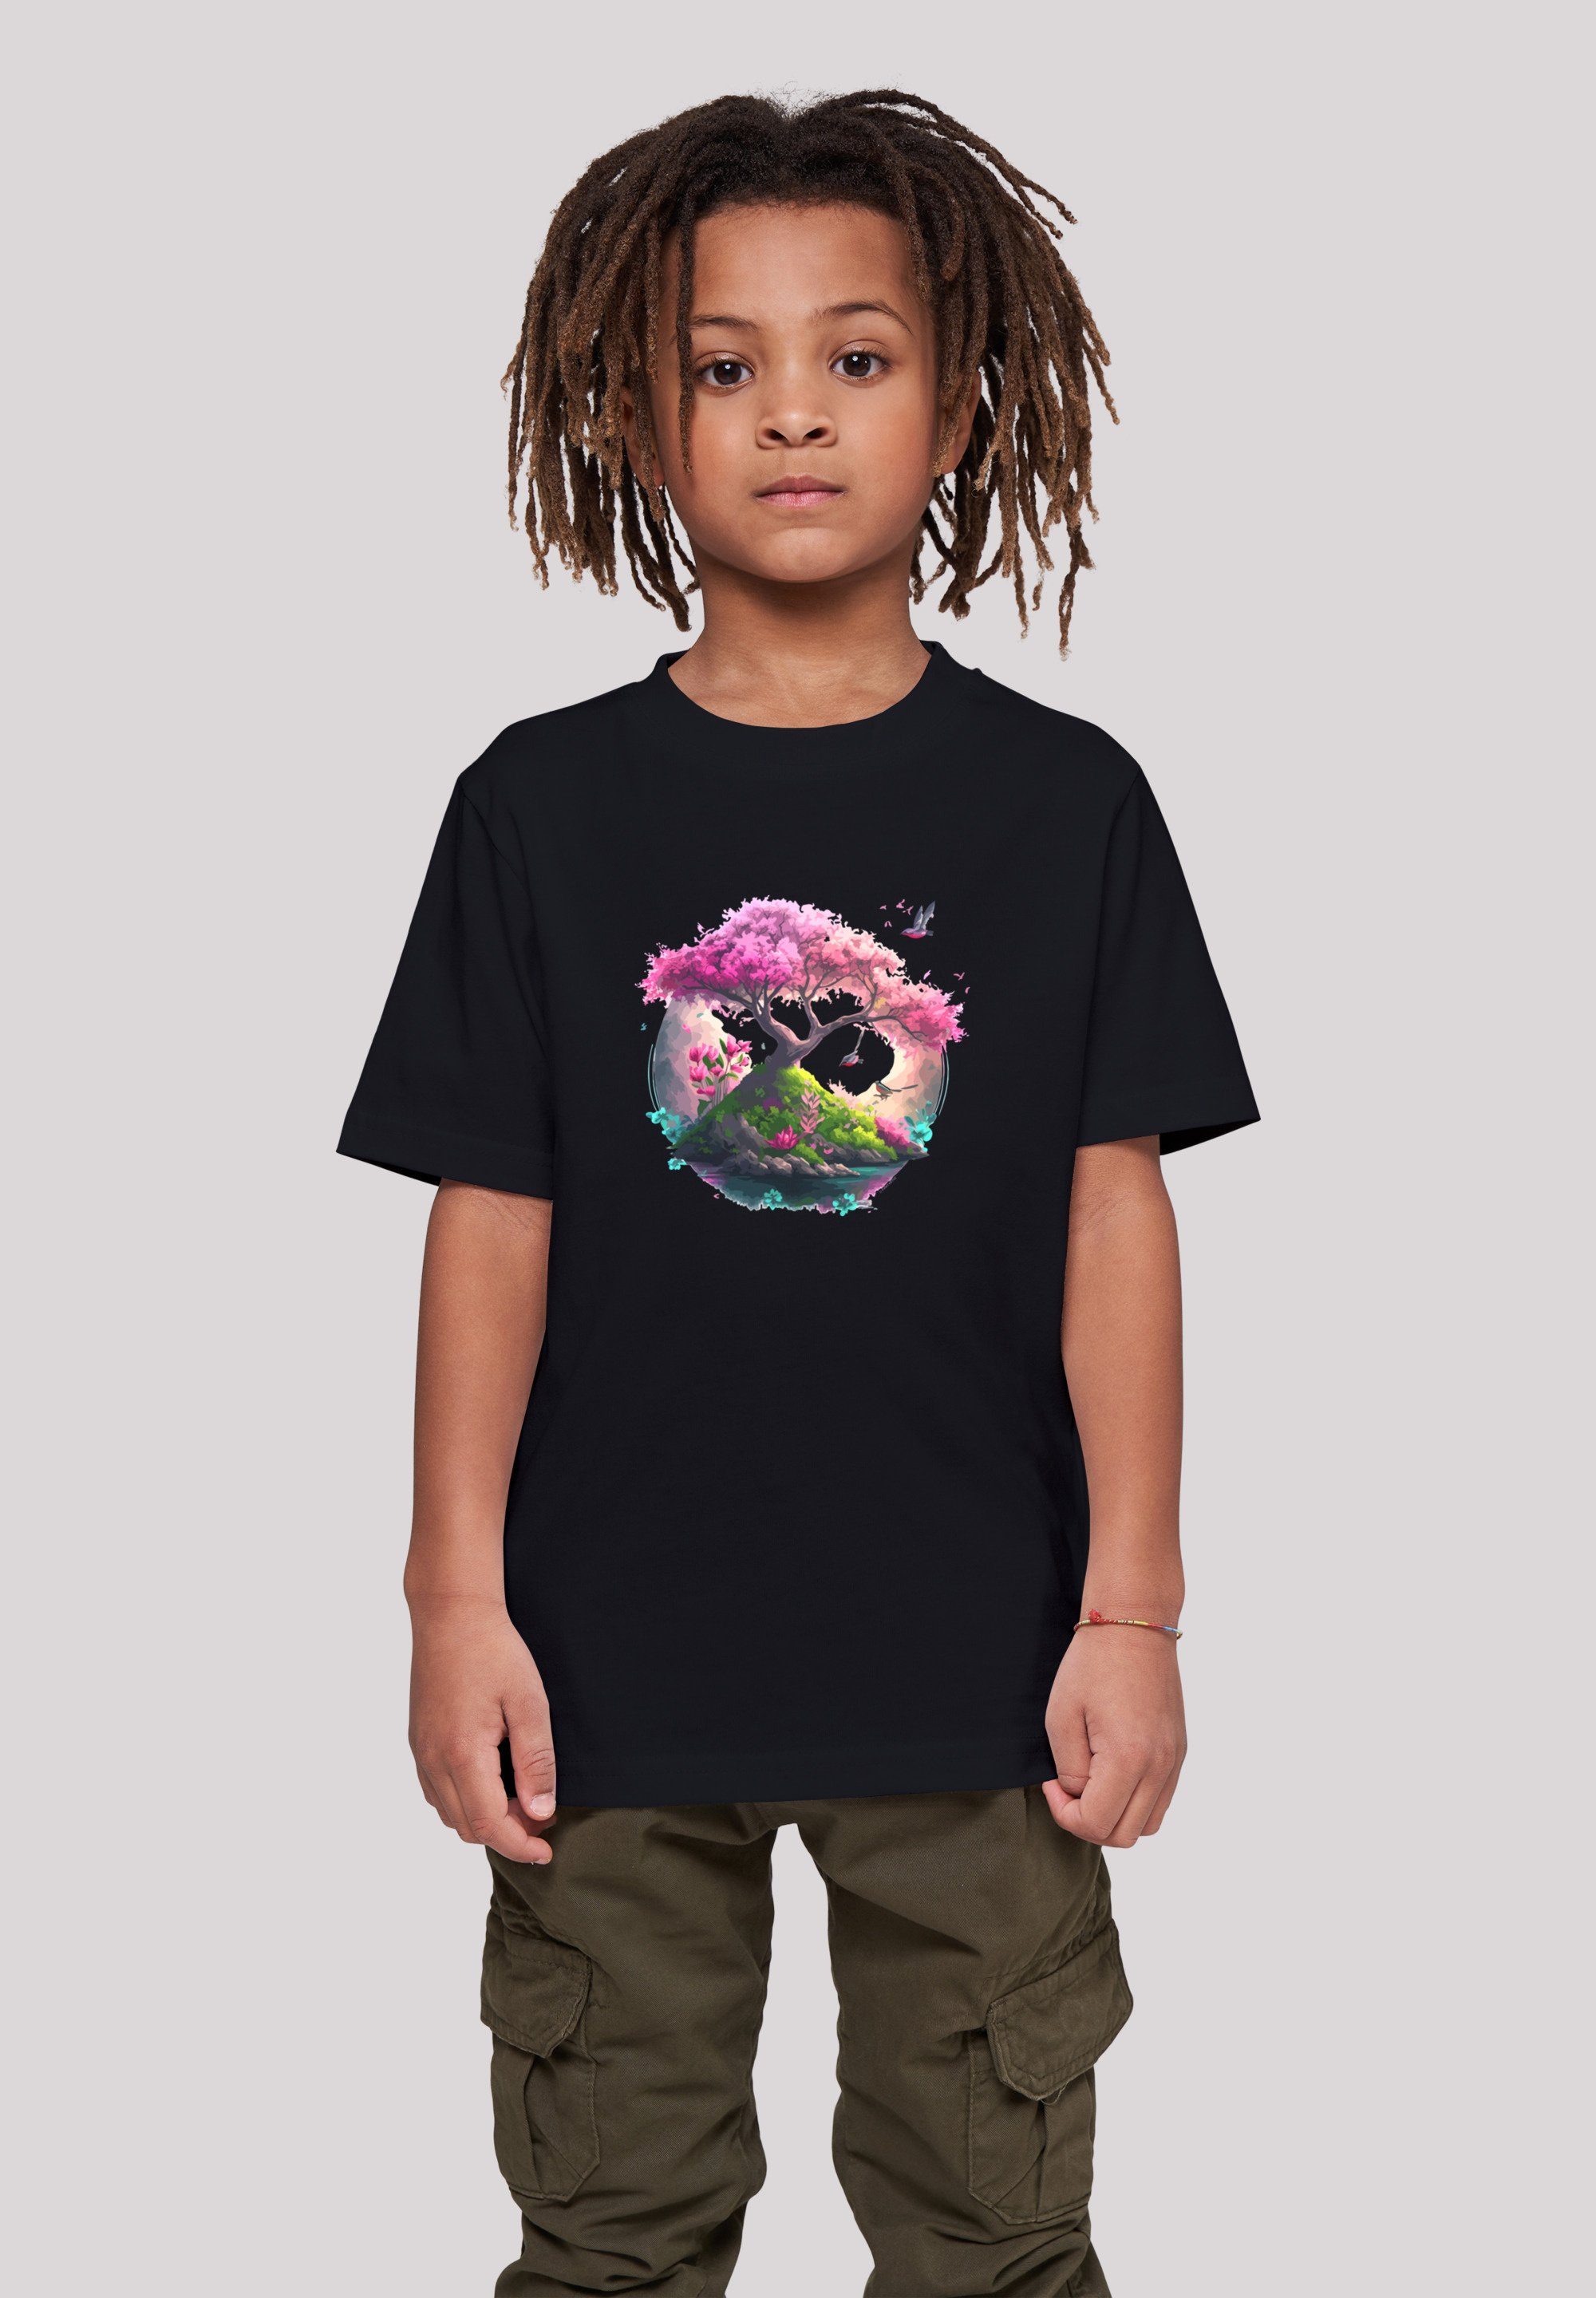 F4NT4STIC T-Shirt Kirschblüten Baum Tee Unisex Print schwarz